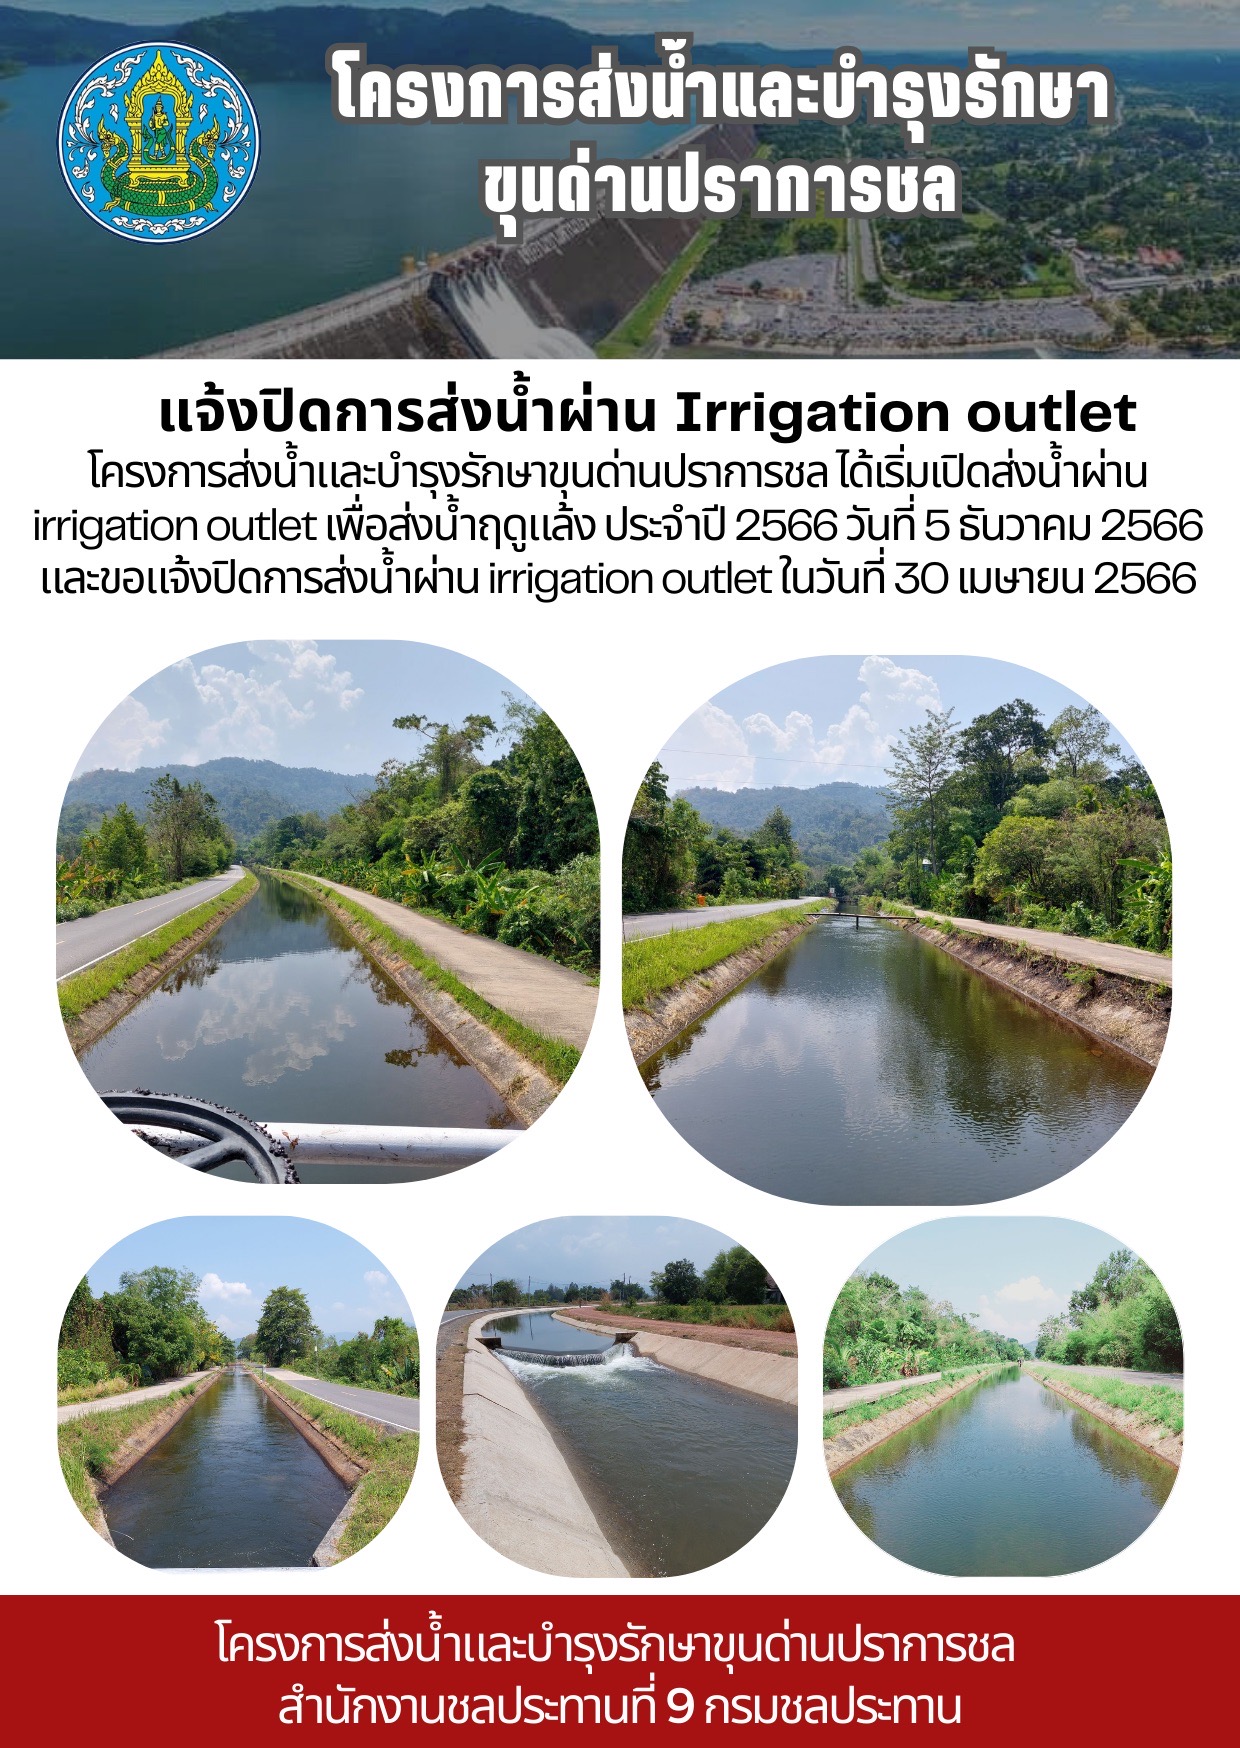 แจ้งปิดการส่งน้ำผ่าน Irrigation Outlet ในวันที่ 30 เมษายน 2566